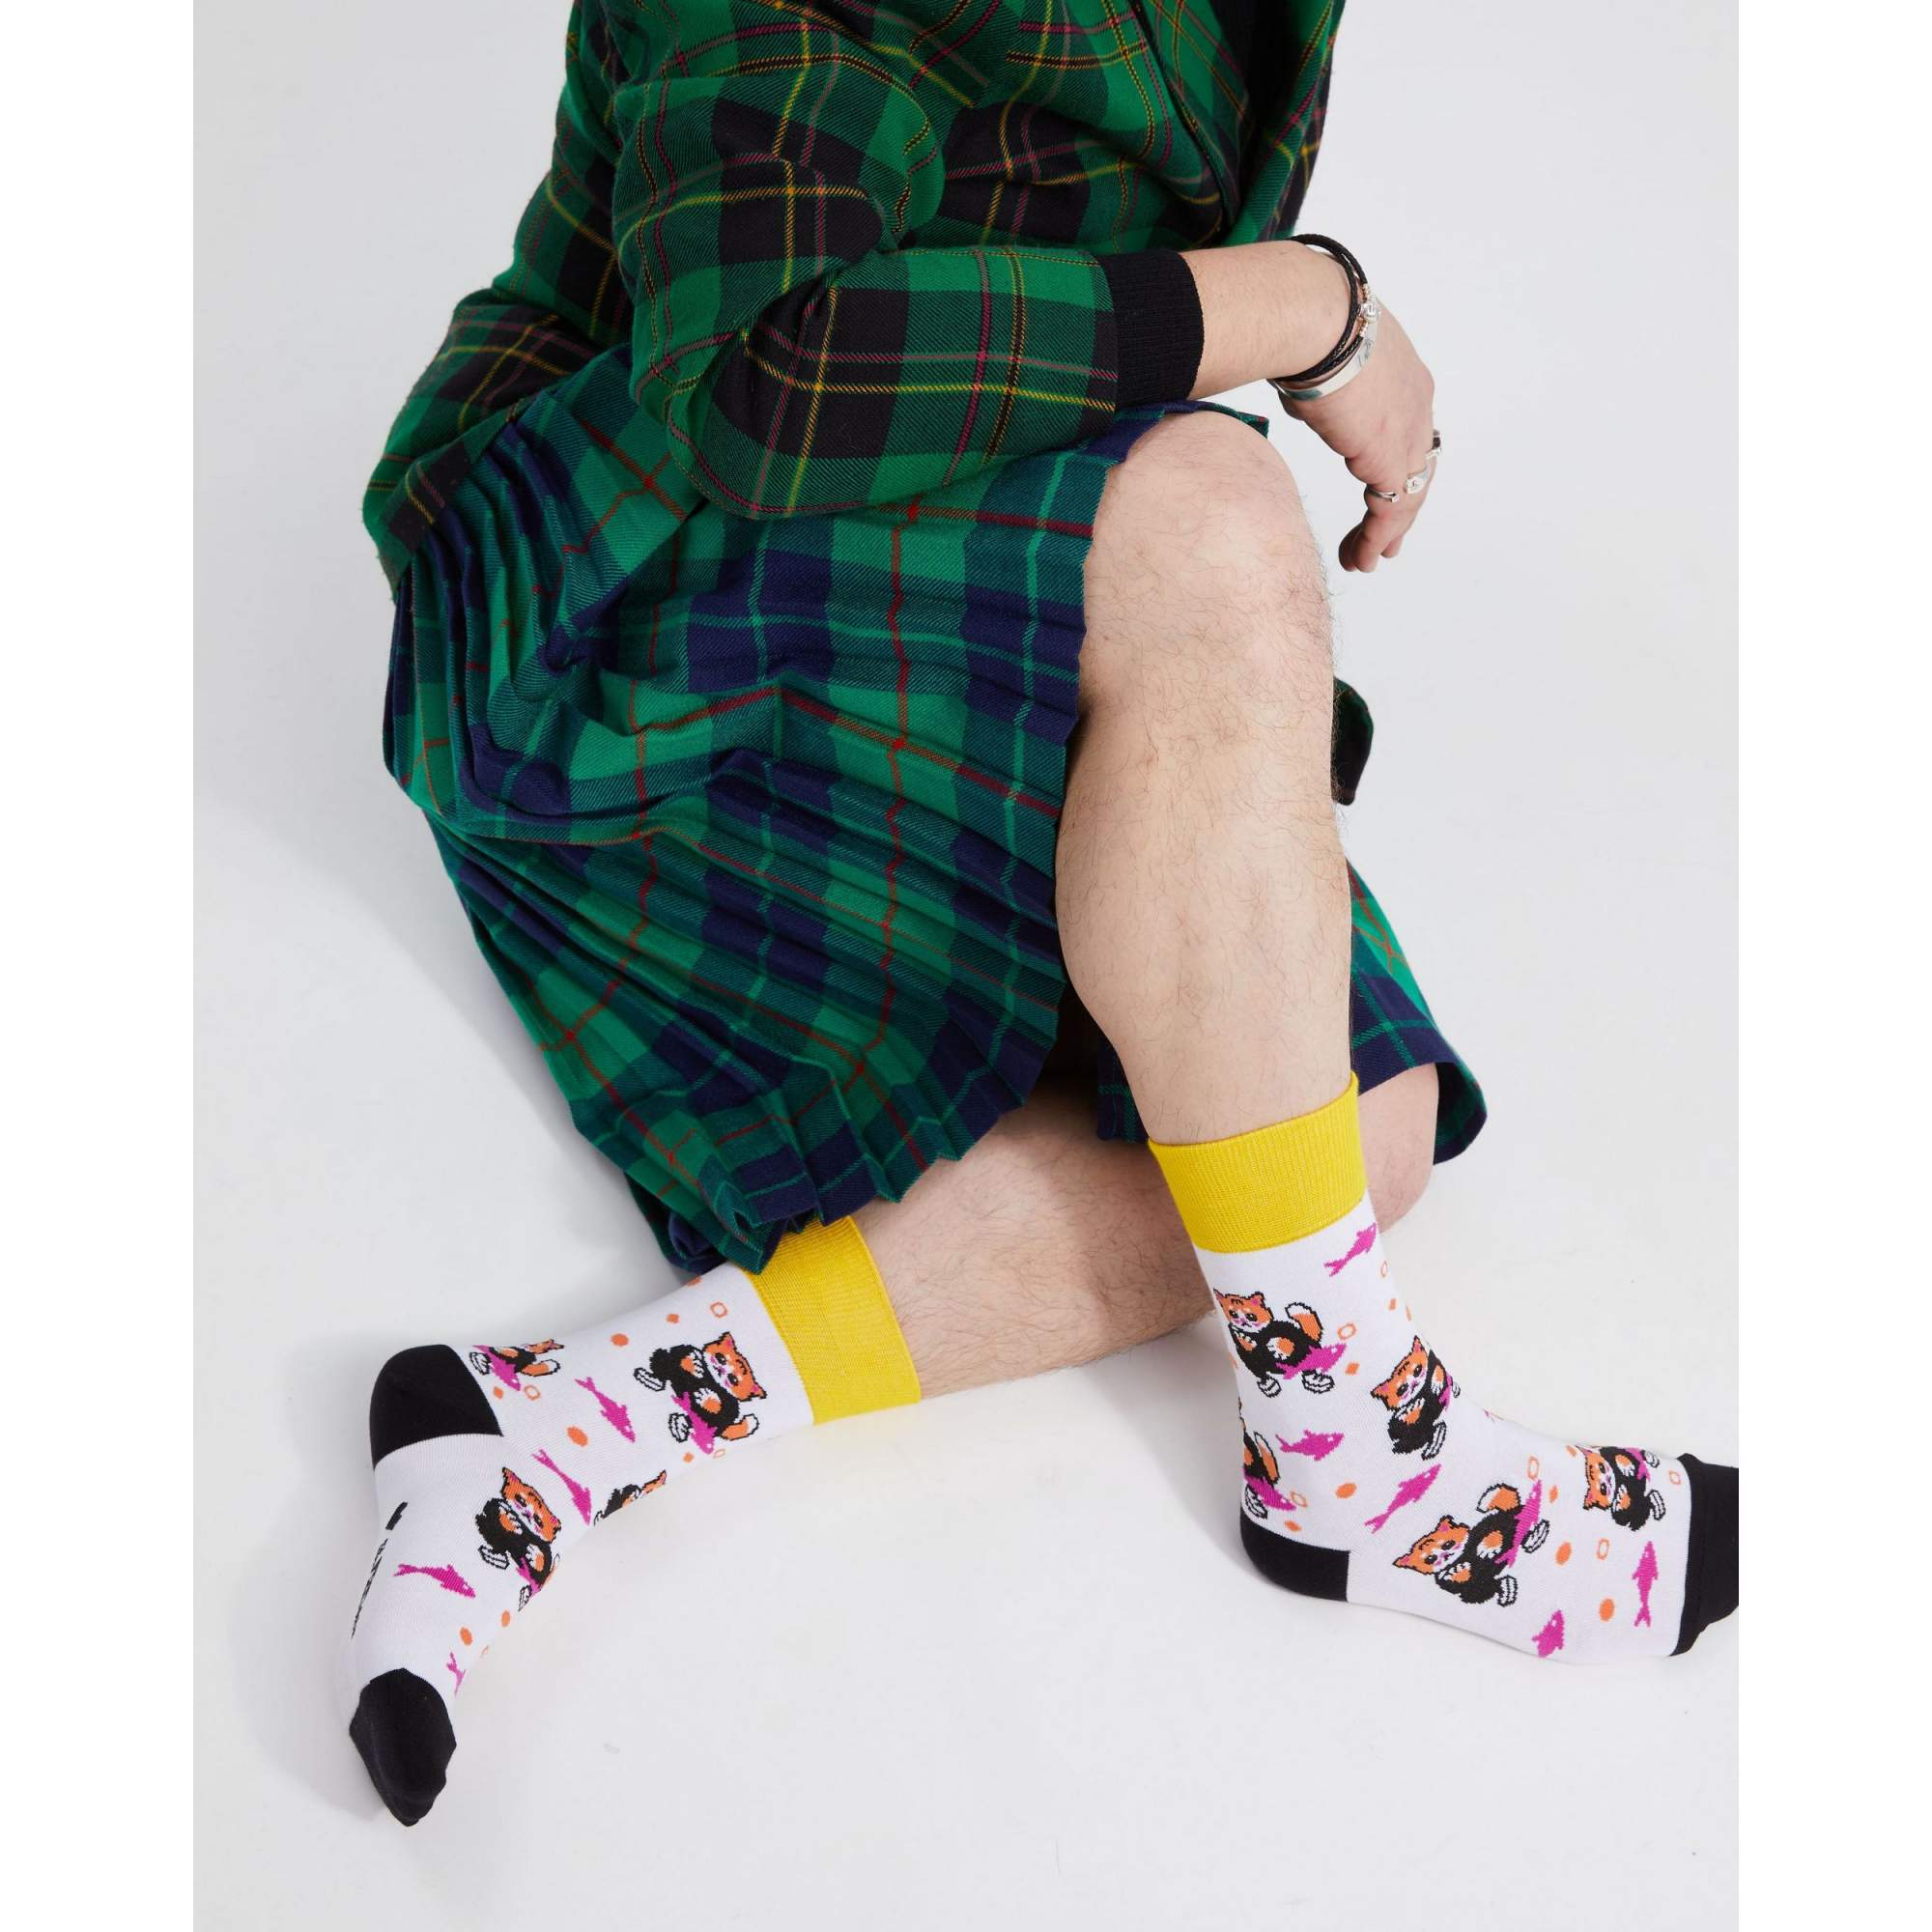 Носки St. Friday Socks contest21-1109-02 разноцветные 42-46